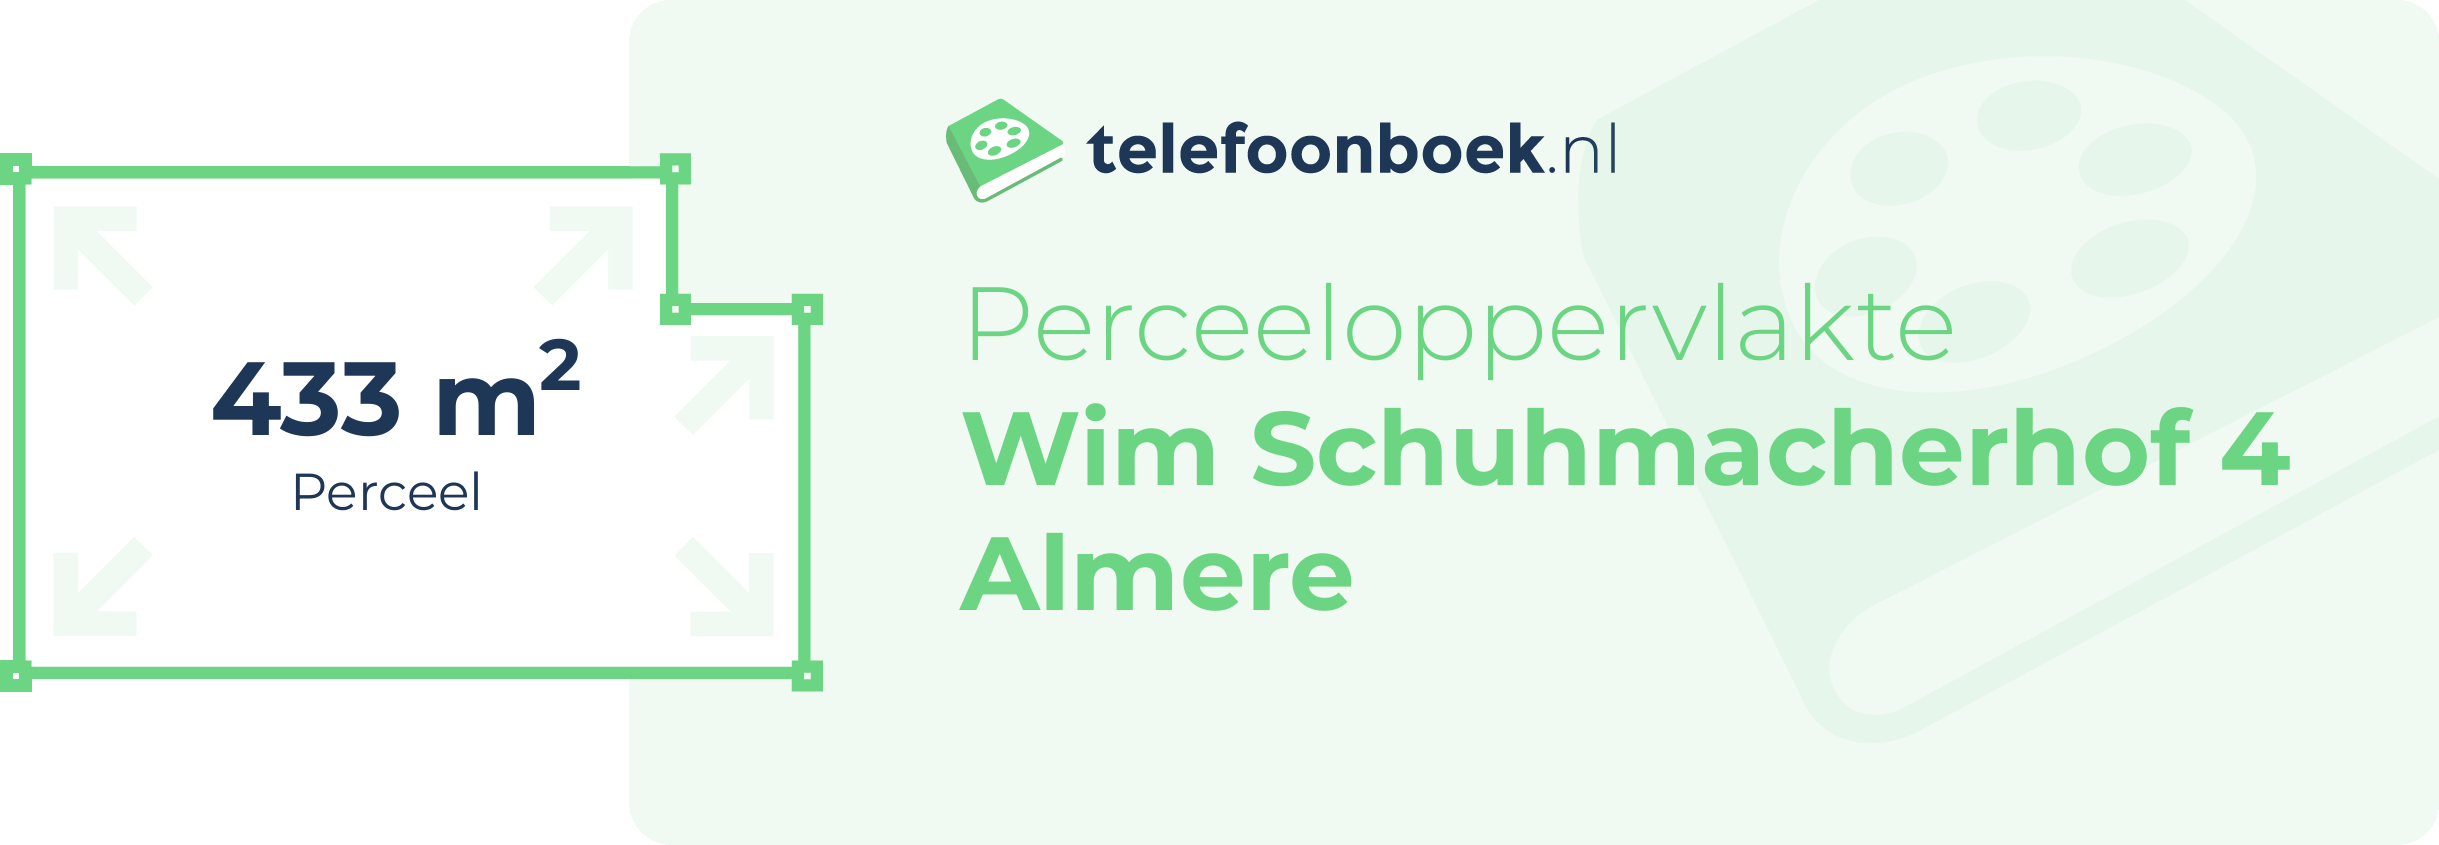 Perceeloppervlakte Wim Schuhmacherhof 4 Almere